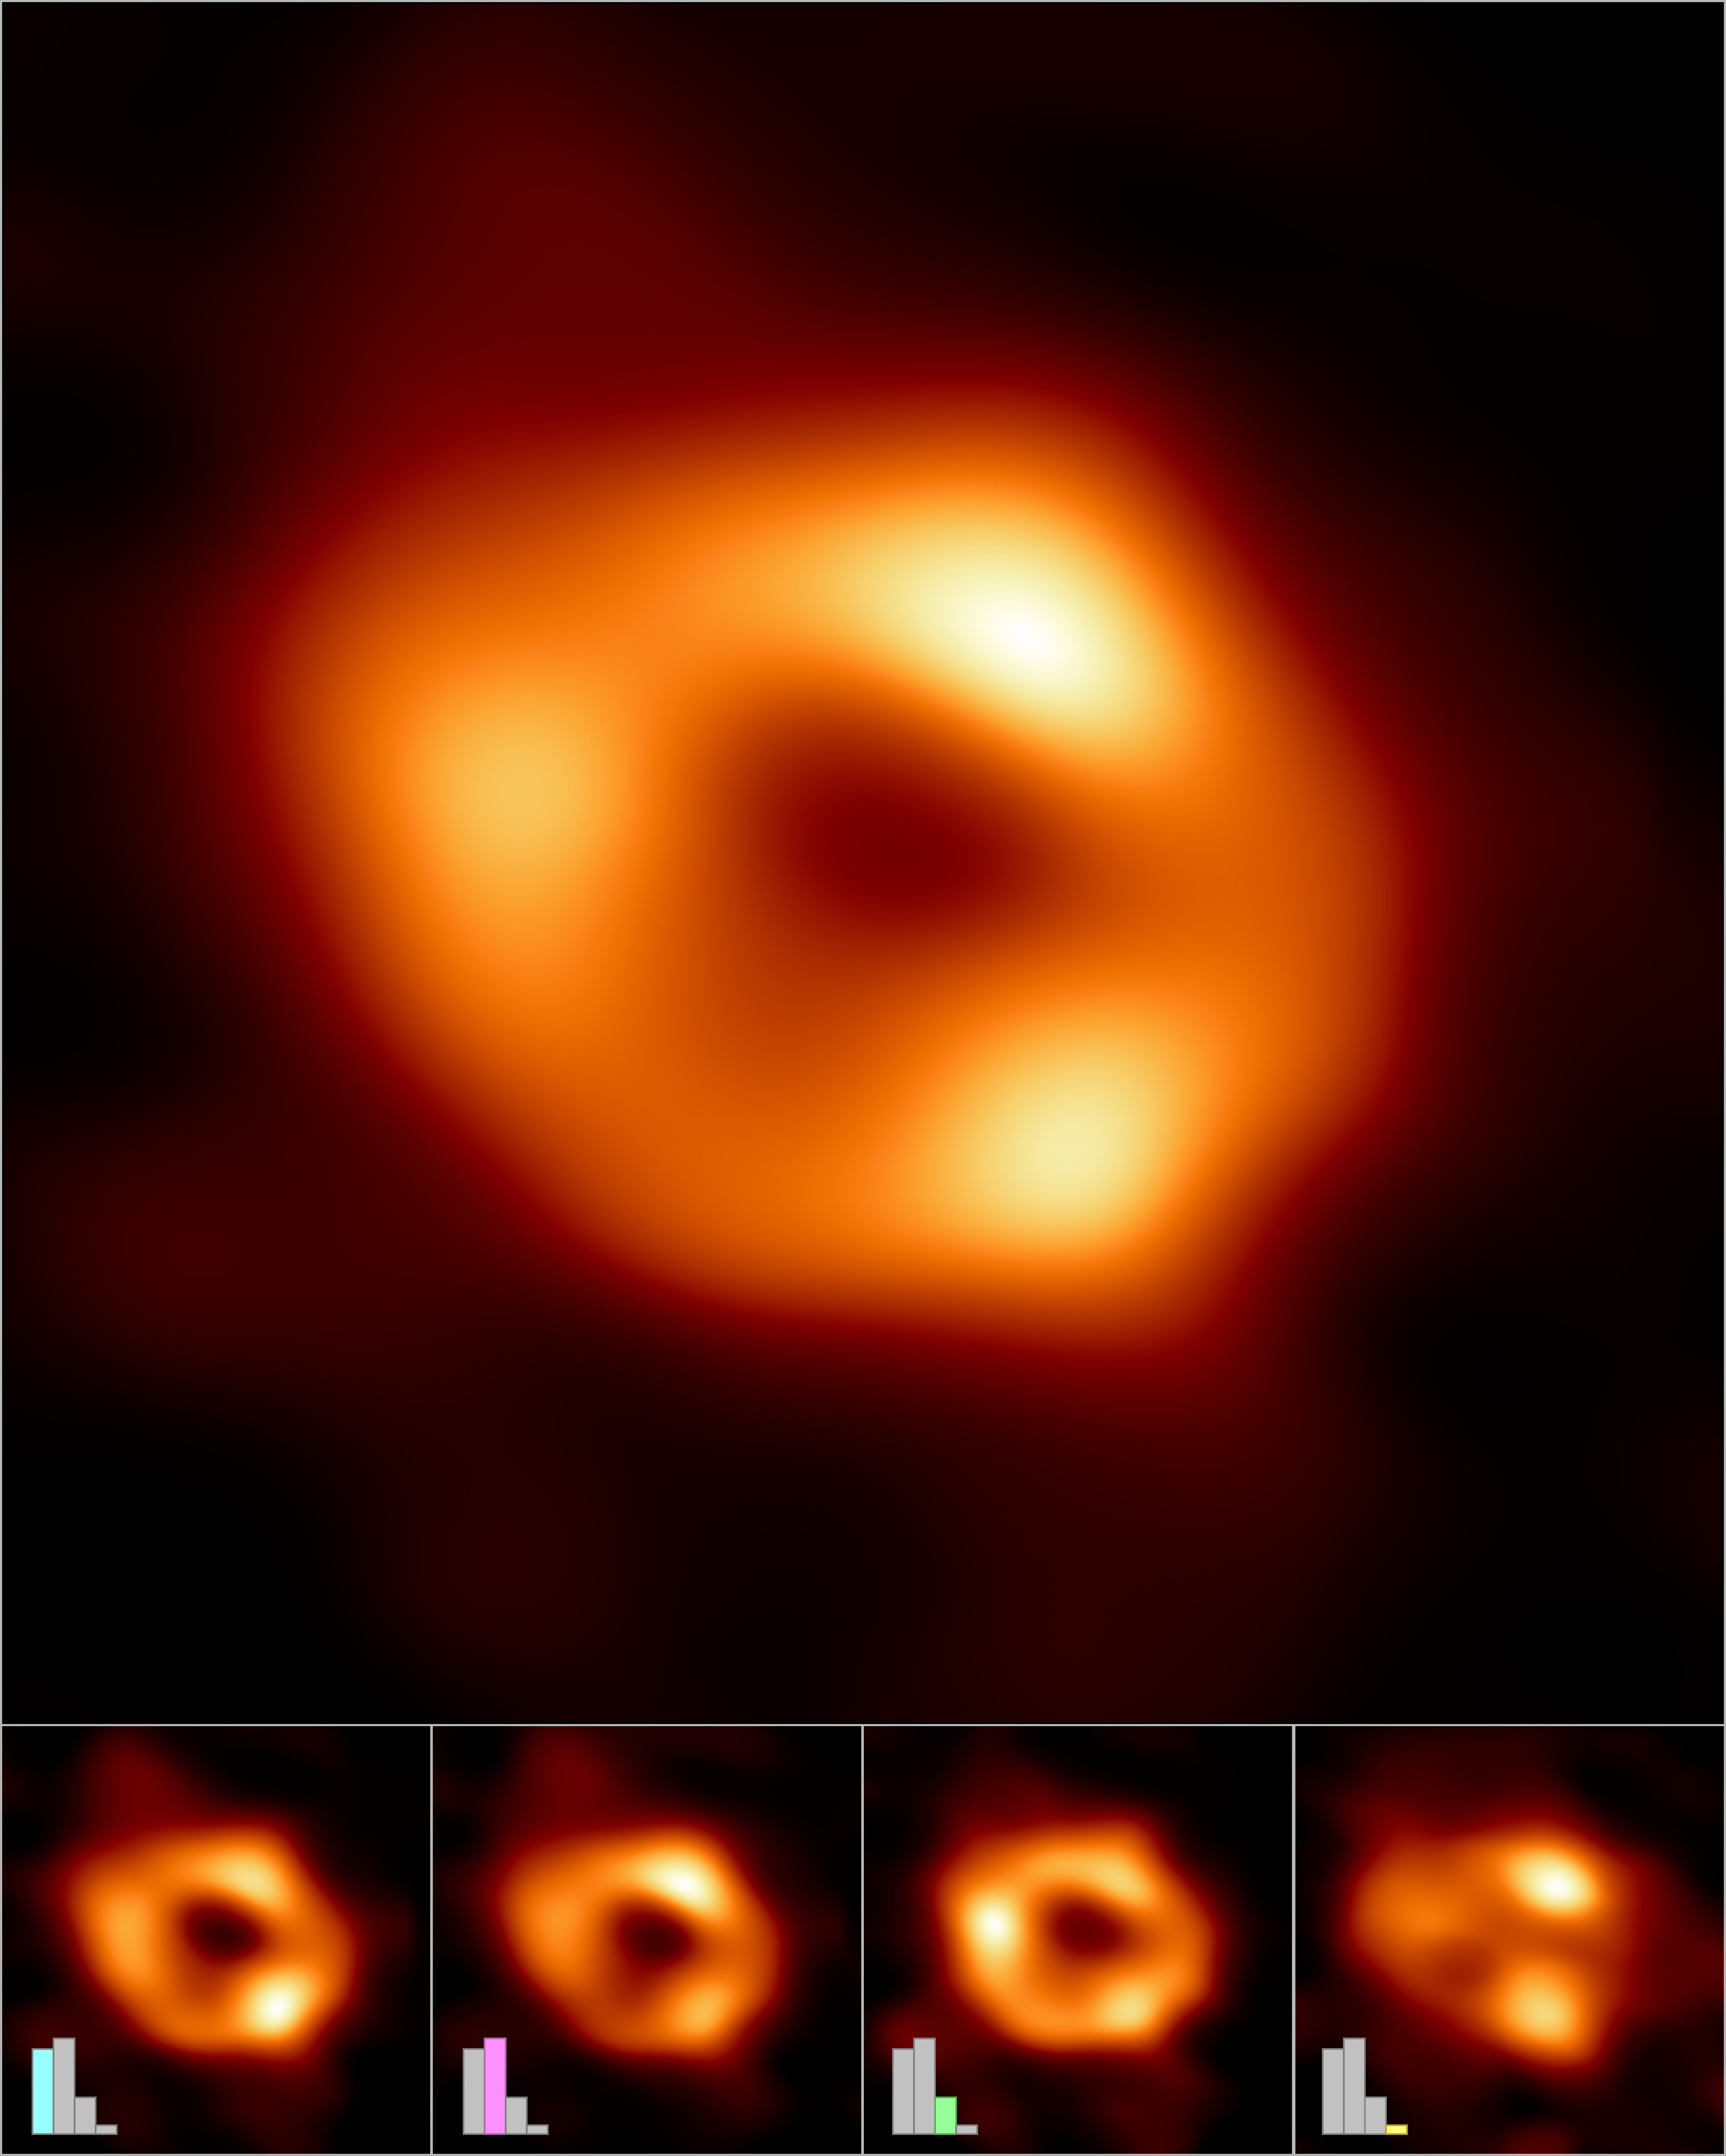 Imágenes de Sagitario A, el agujero negro en el centro de la Via Láctea   EHT